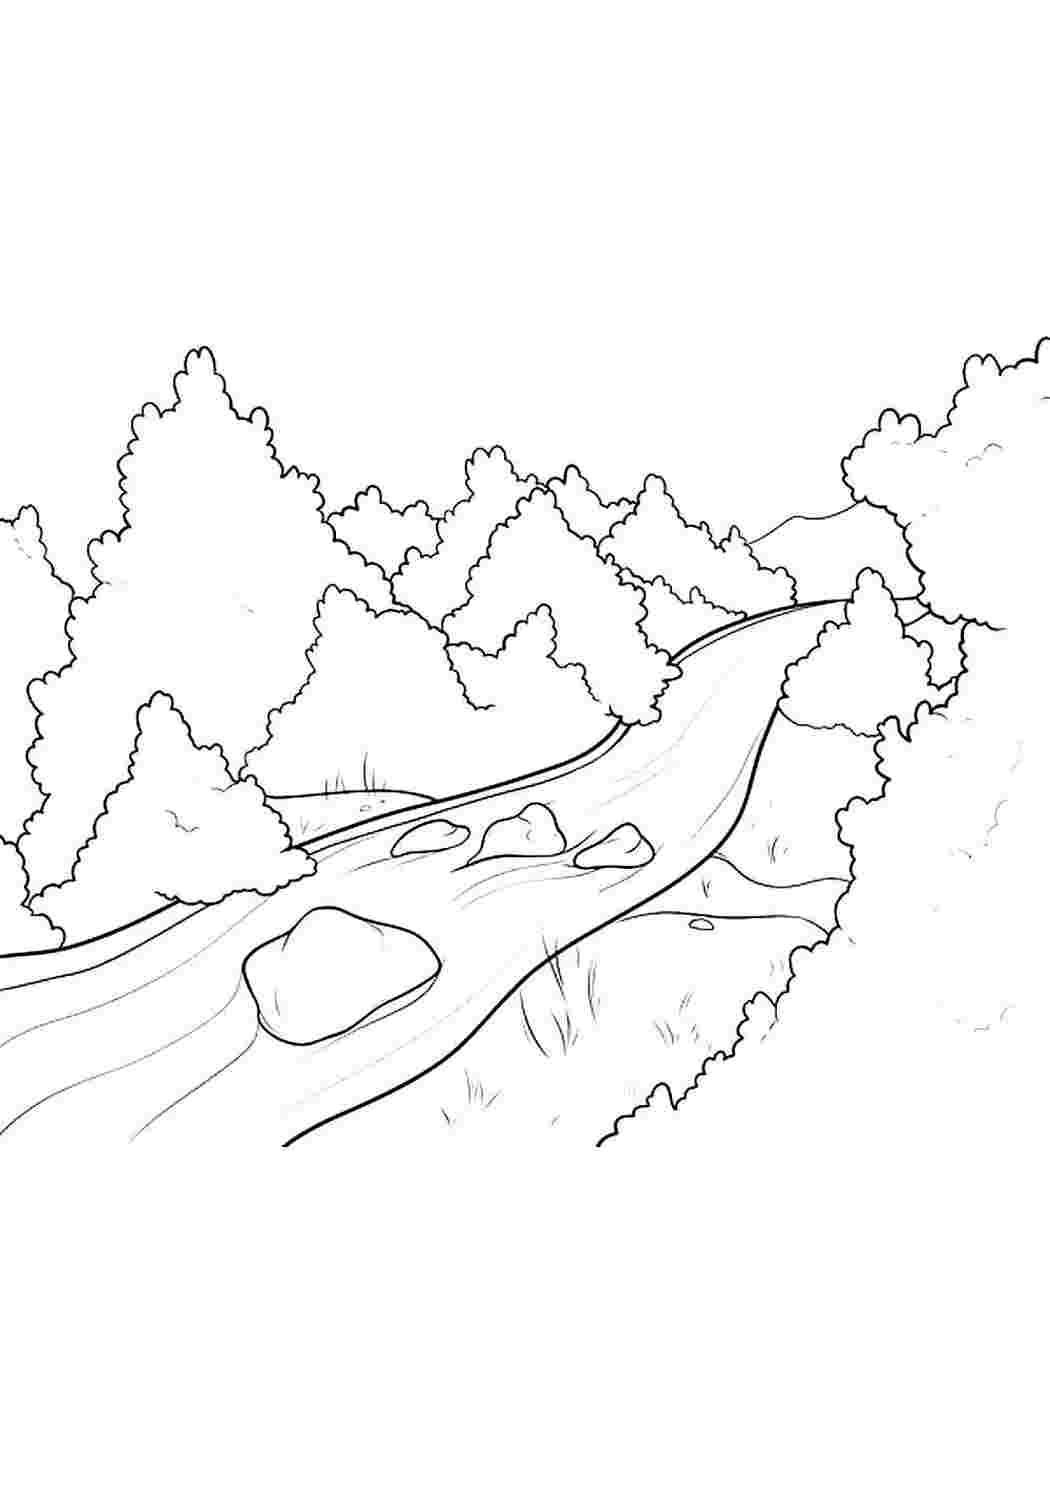 Как нарисовать черно-белую лодку на реке — поэтапный рисунок простым карандашом